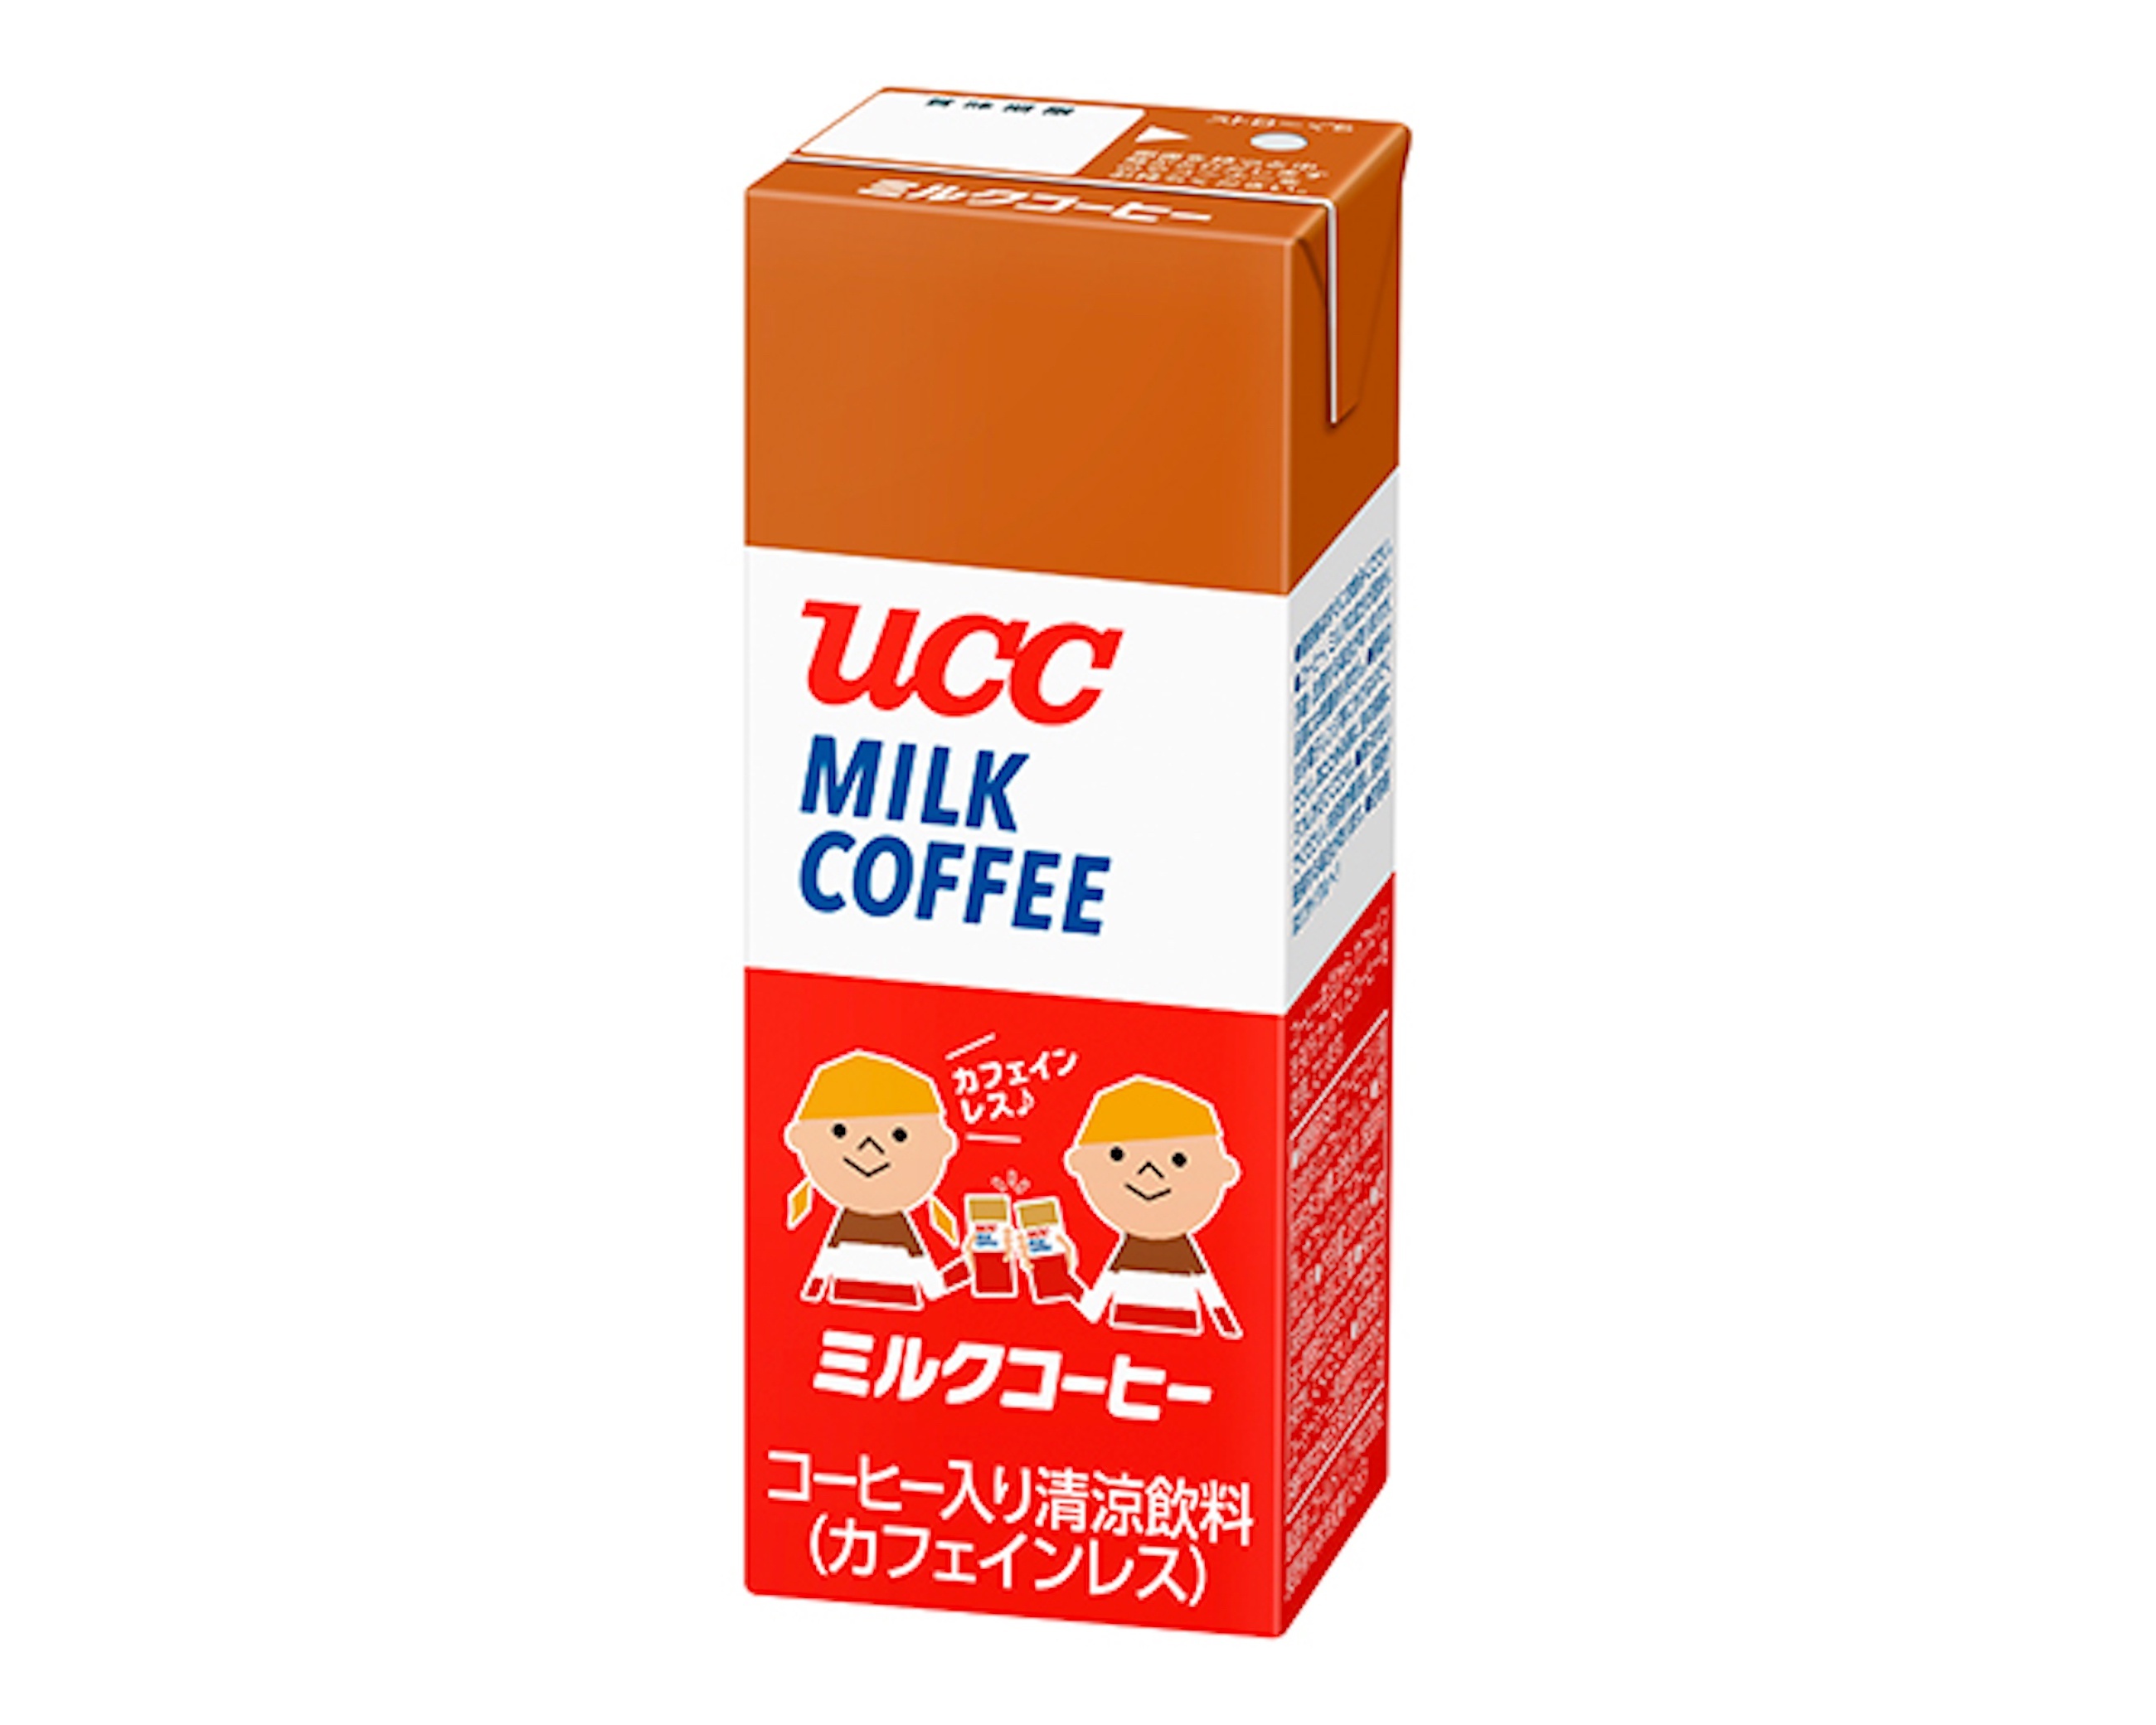 「ミルクコーヒー 紙パック200ml」(カフェインレスコーヒー100%)。子どもたちにもなじみやすい、かわいらしい商品パッケージに